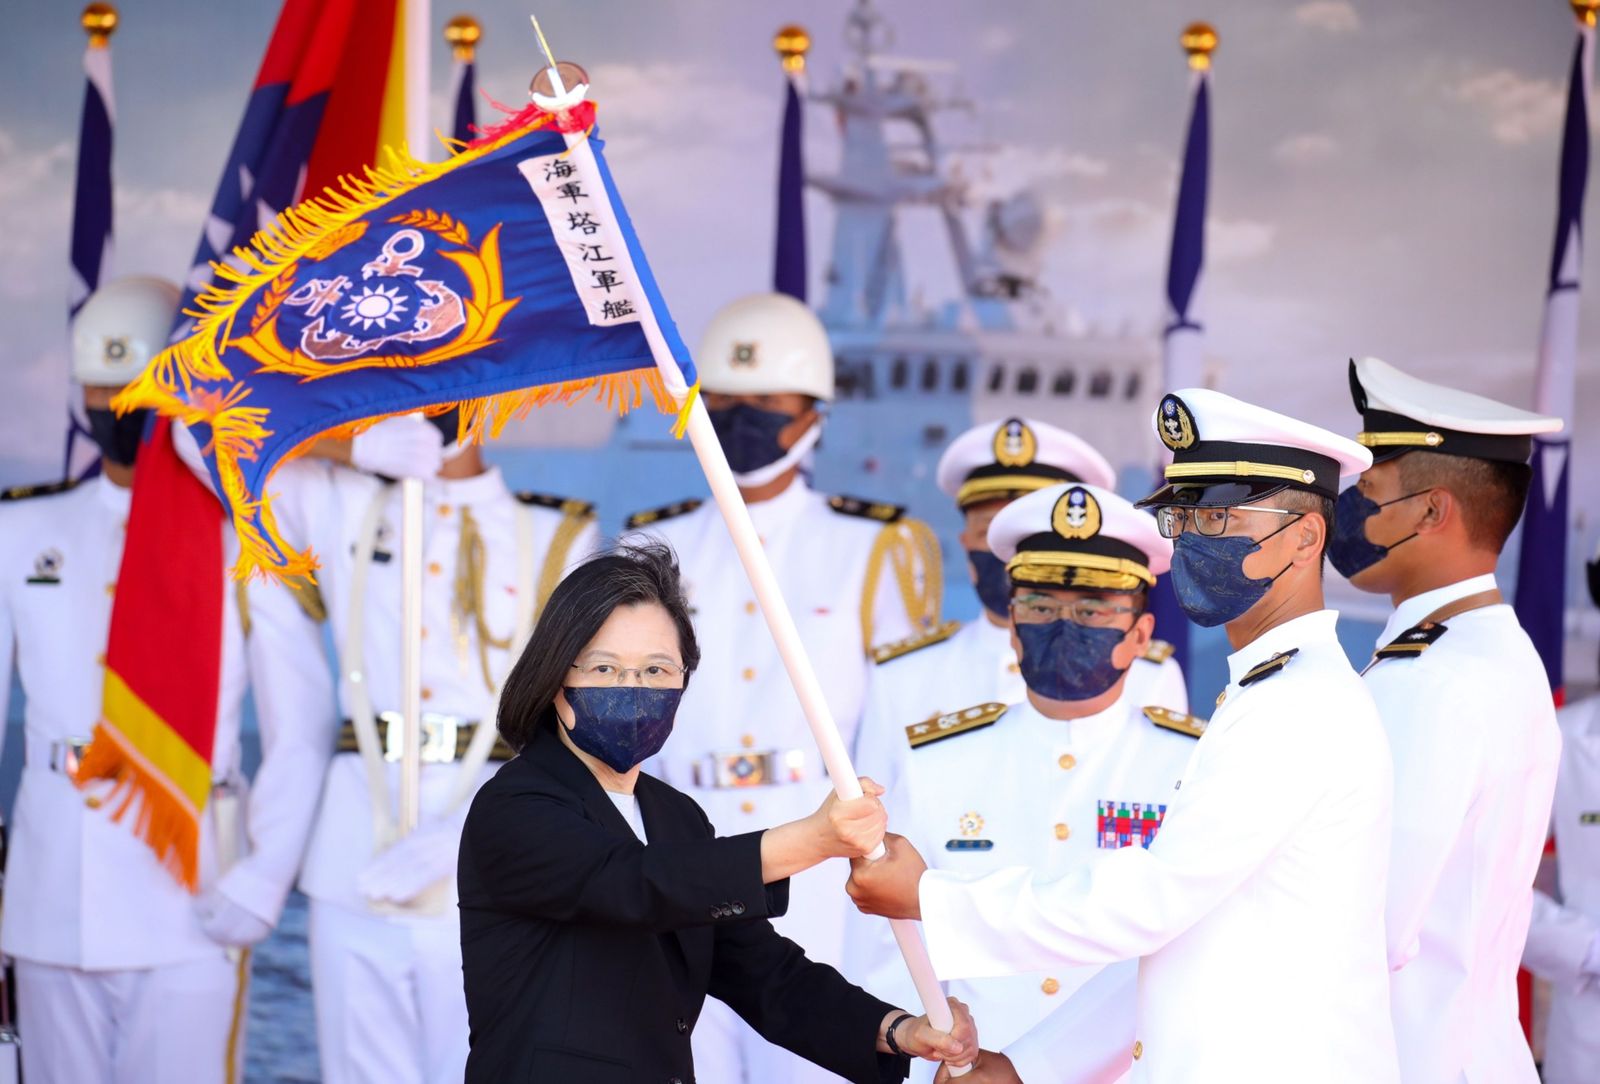 الرئيسة التايوانية تساي إنغ ون خلال احتفال عسكري في مقاطعة ييلان - 9 سبتمبر 2021 - Bloomberg